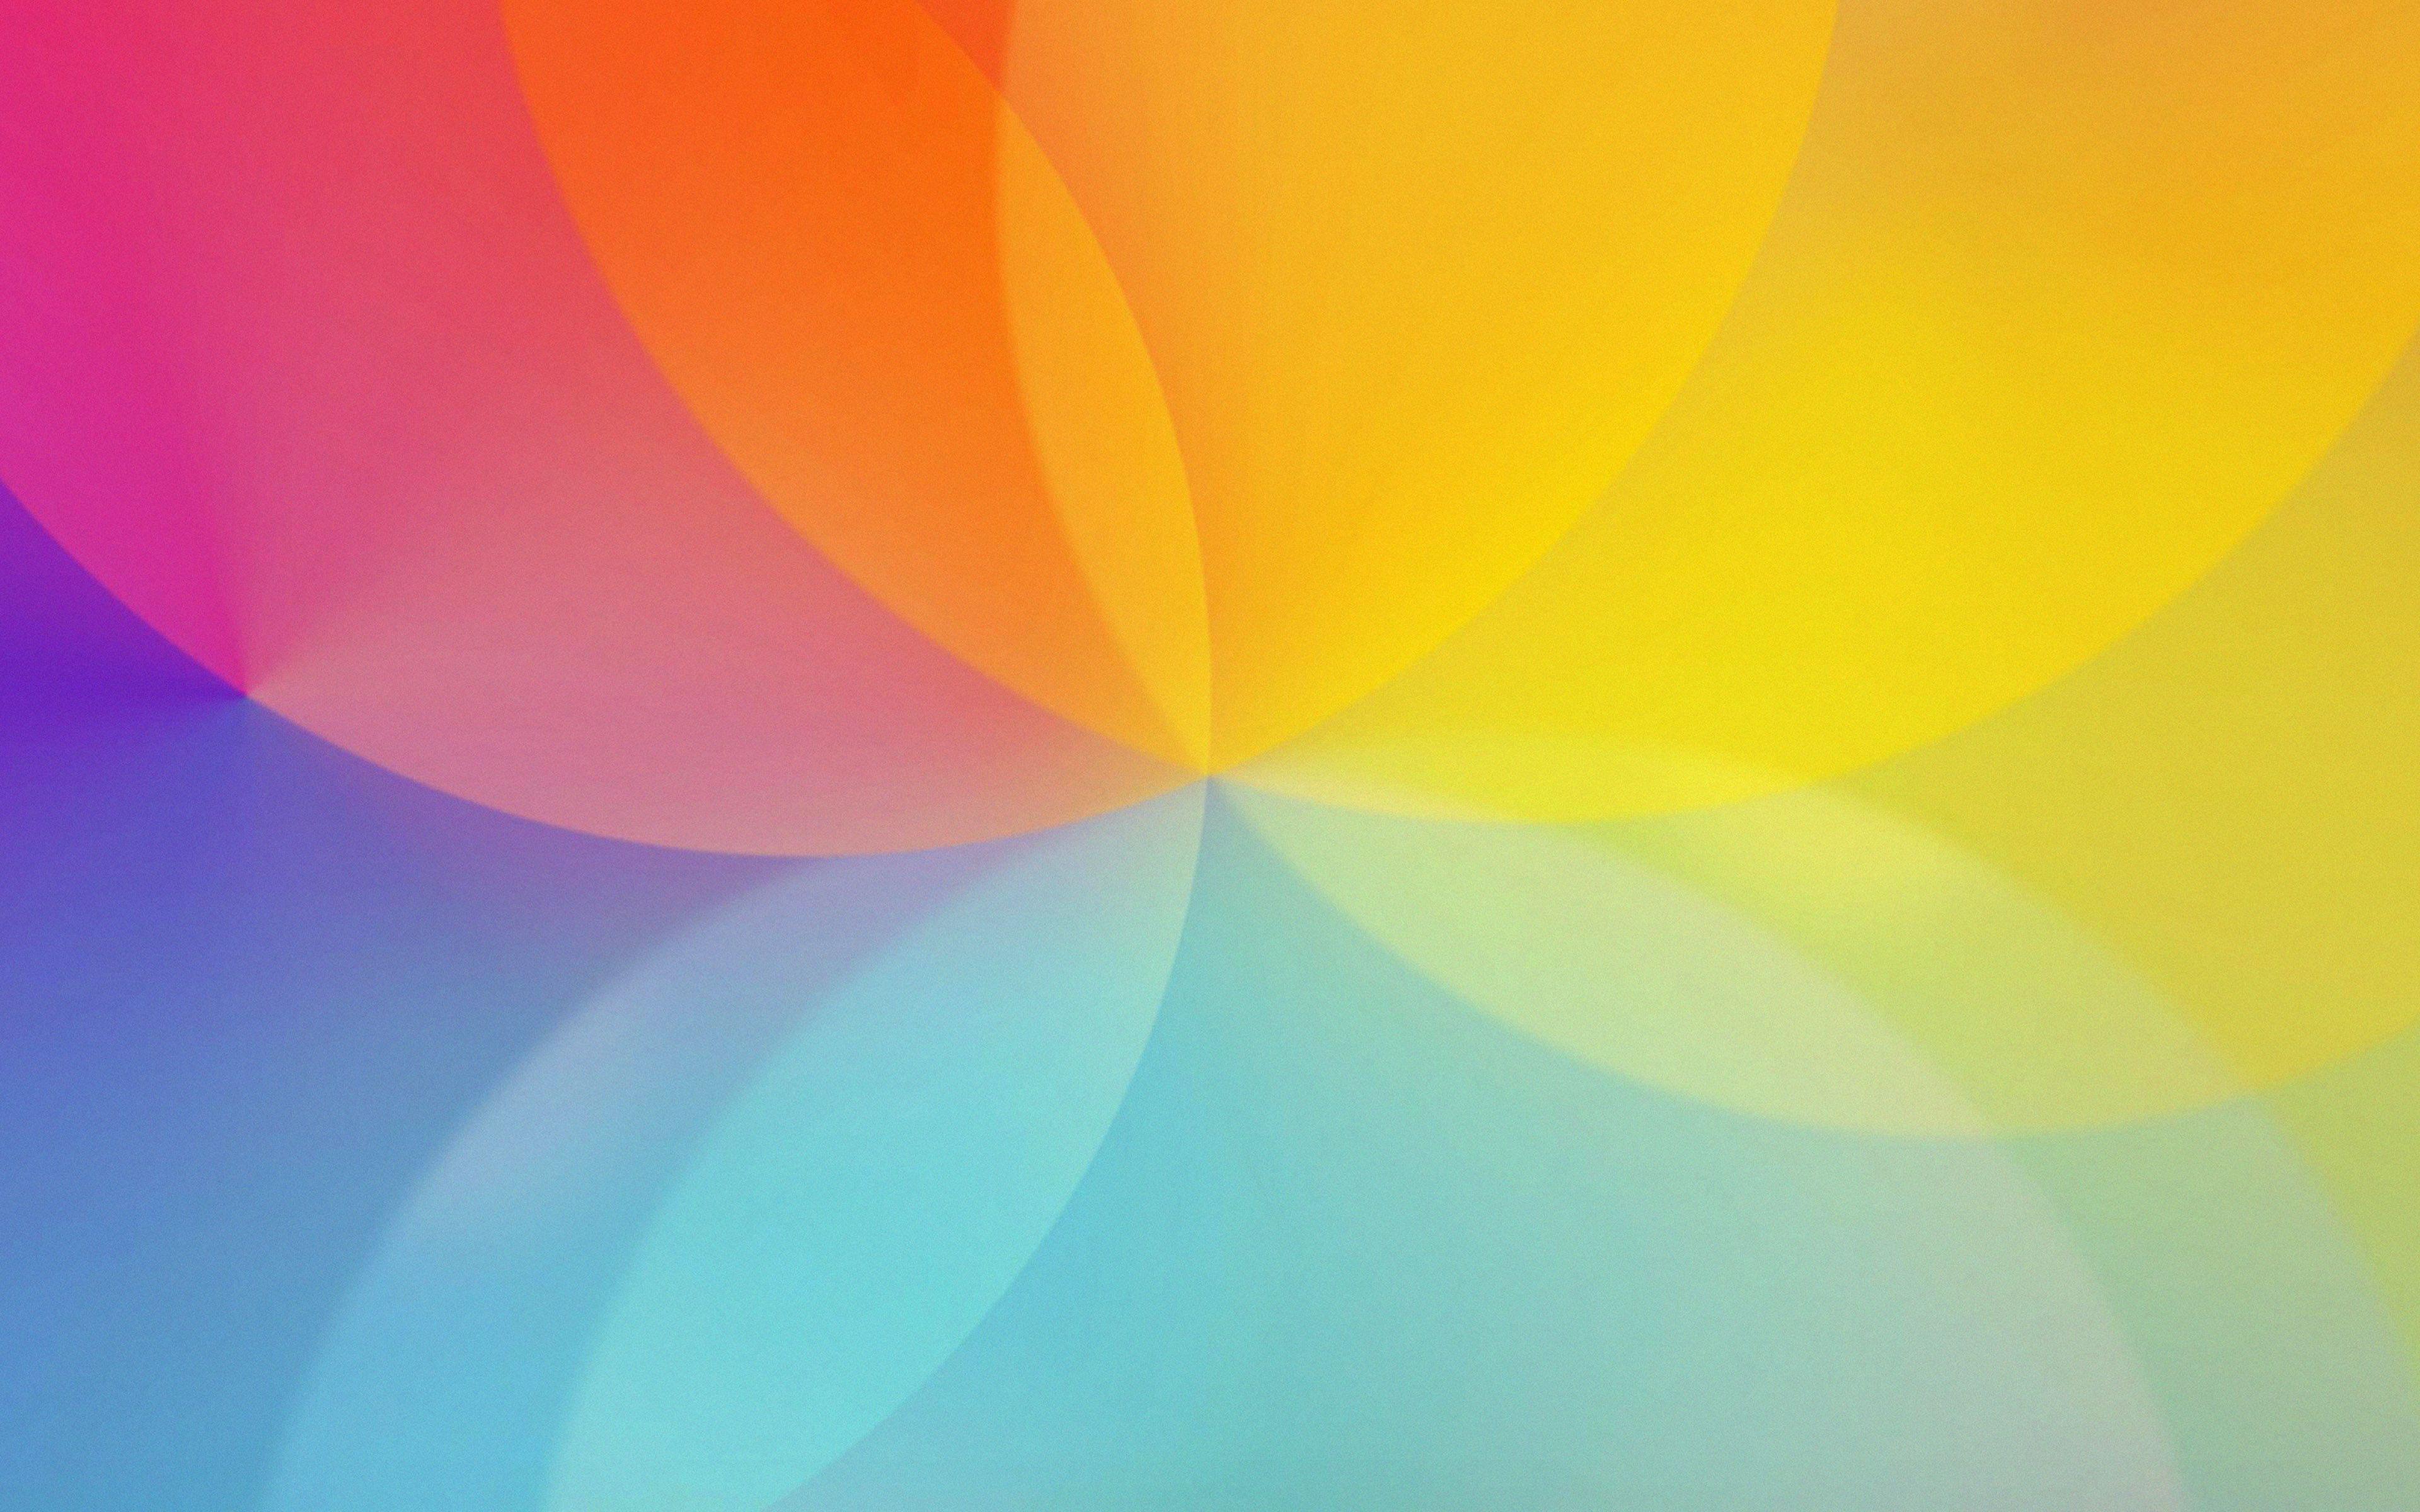 wallpaper for desktop, laptop. lg g4 rainbow lights bokeh art